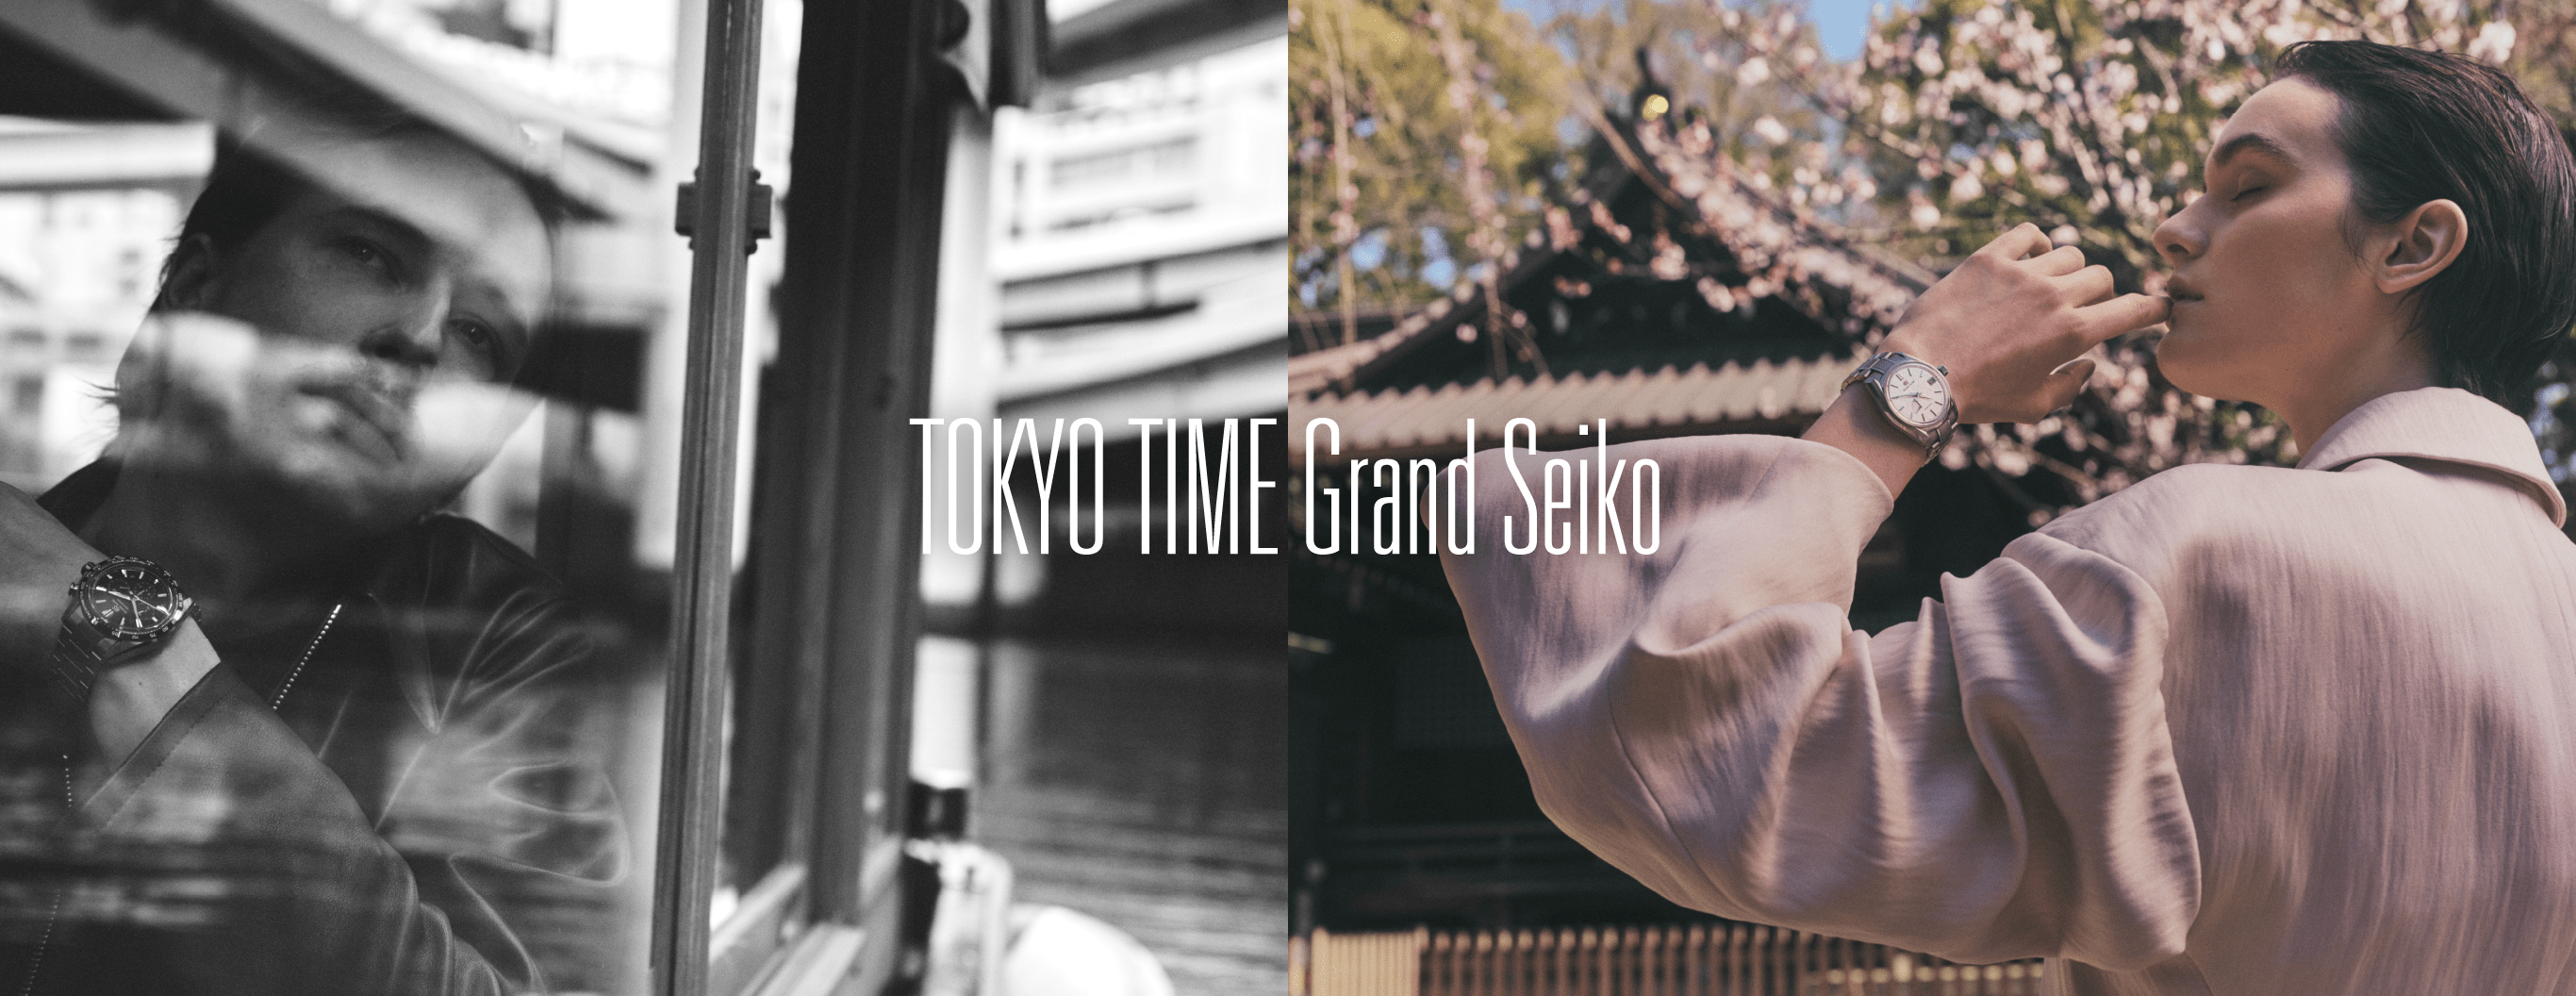 TOKYO TIME Grand Seiko